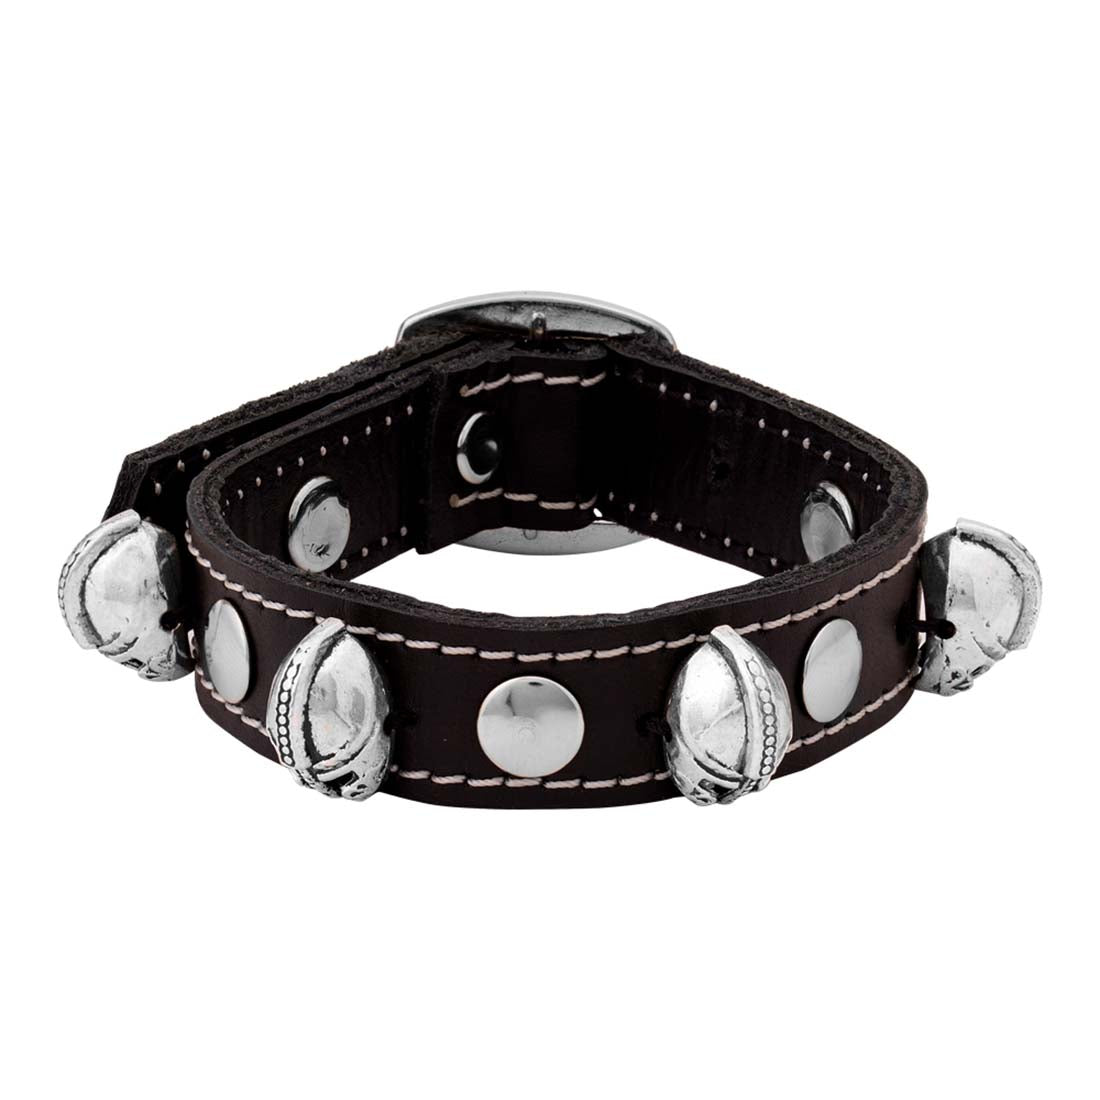 Buy Voylla Beaded Bracelet for Men (Black)(8907617751580) at Amazon.in